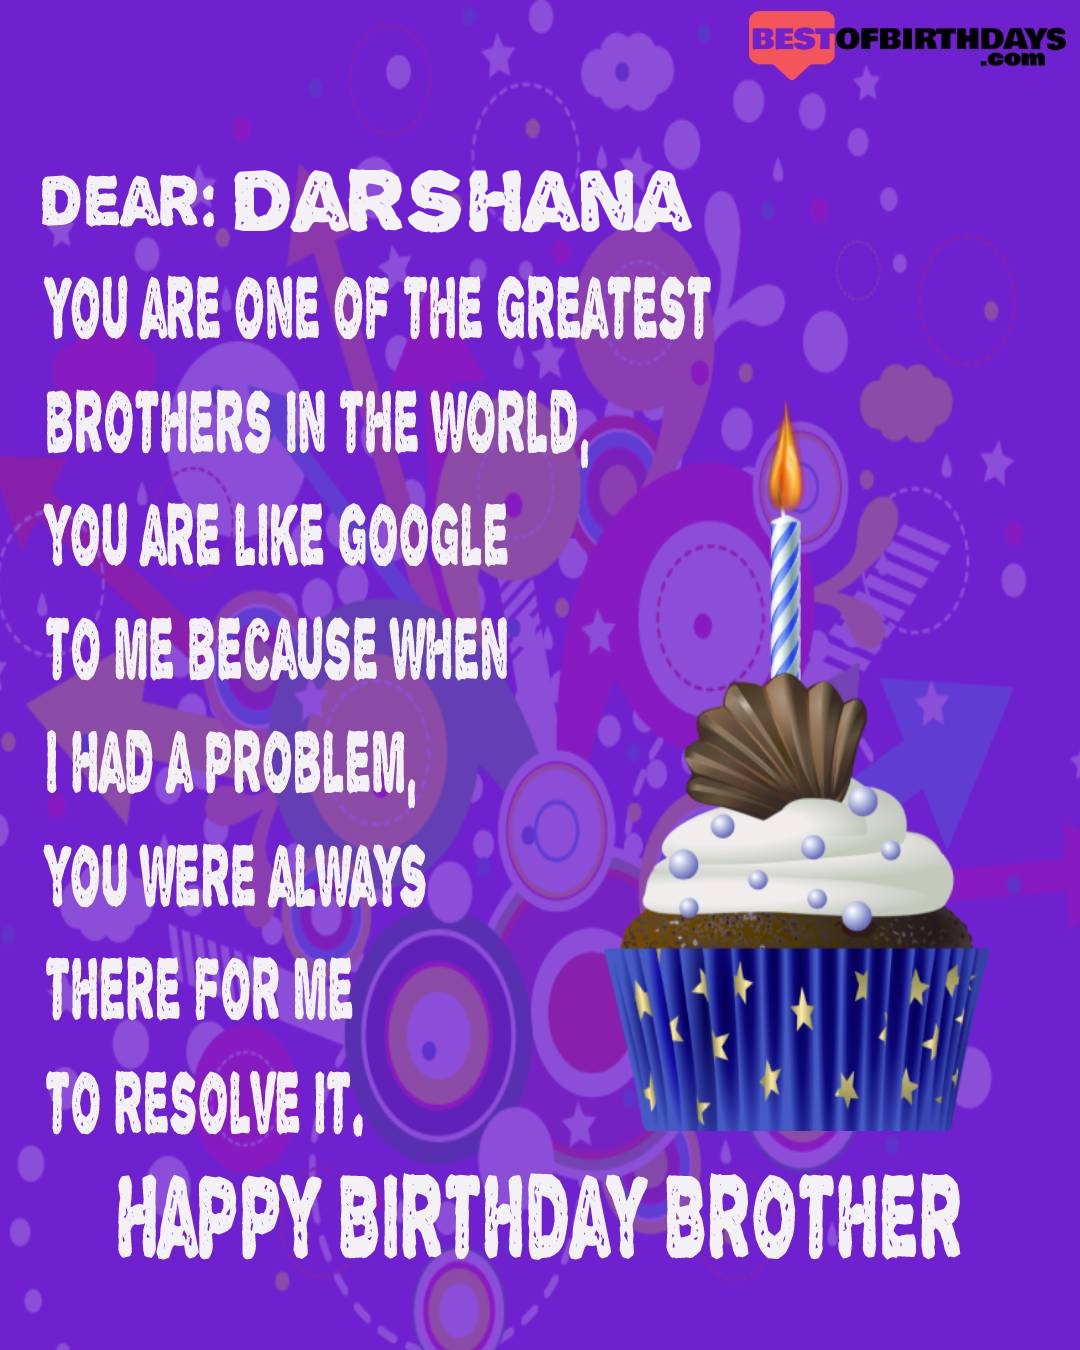 Happy birthday darshana bhai brother bro